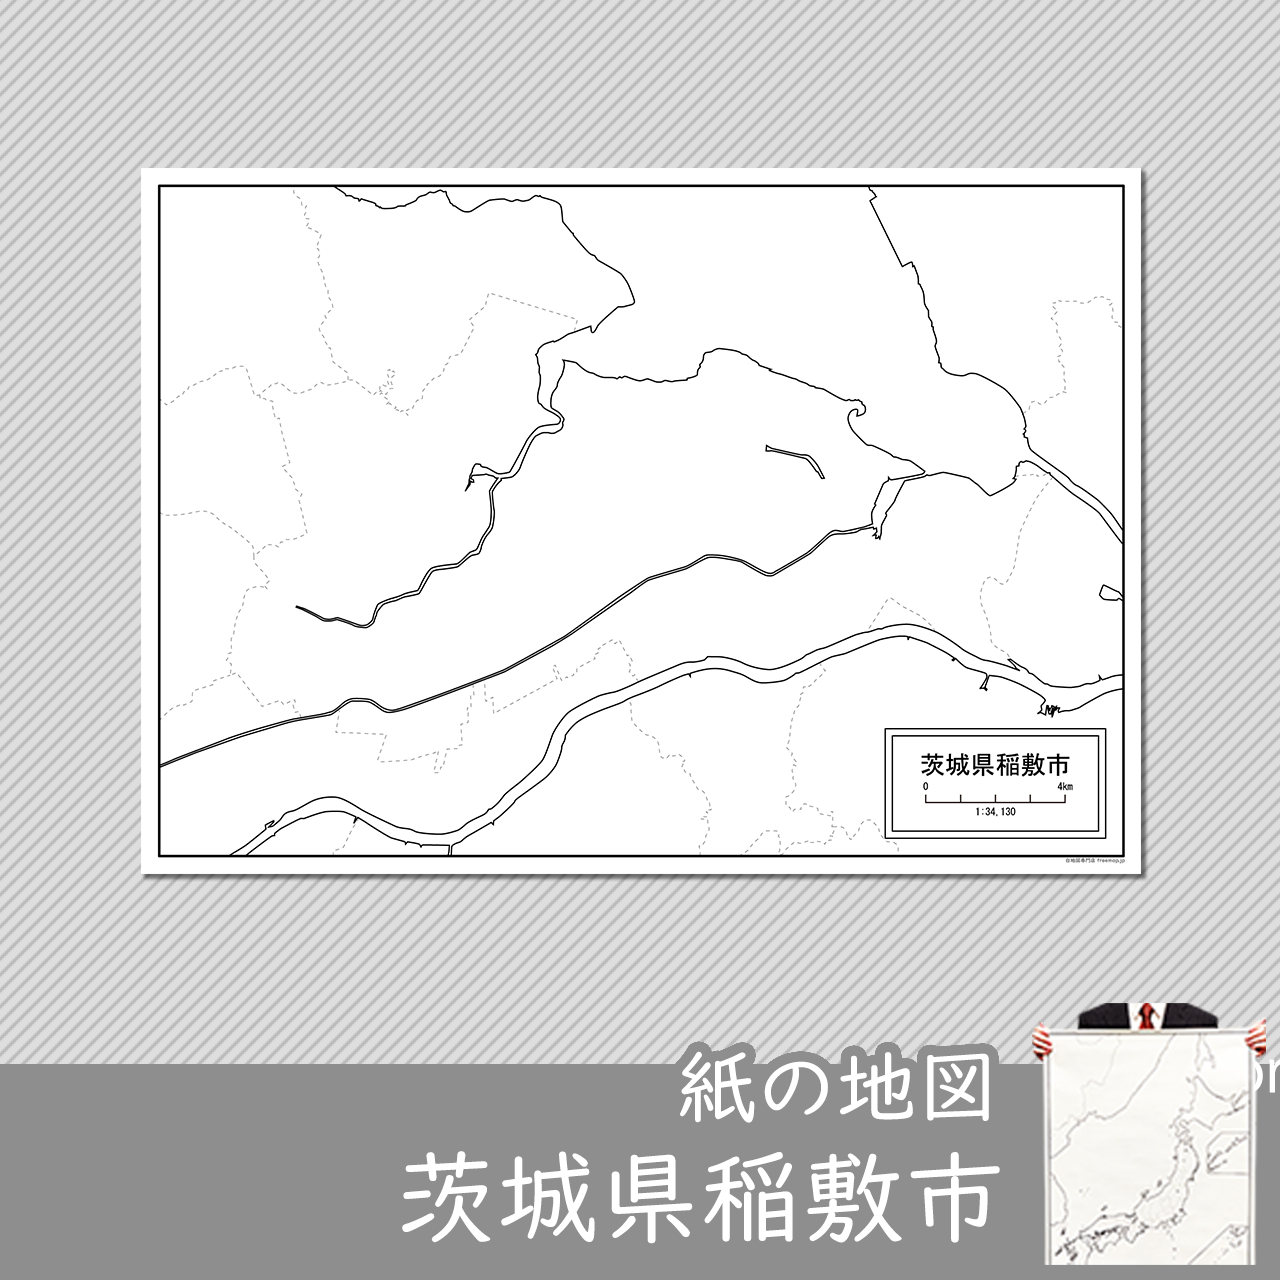 稲敷市の紙の白地図のサムネイル